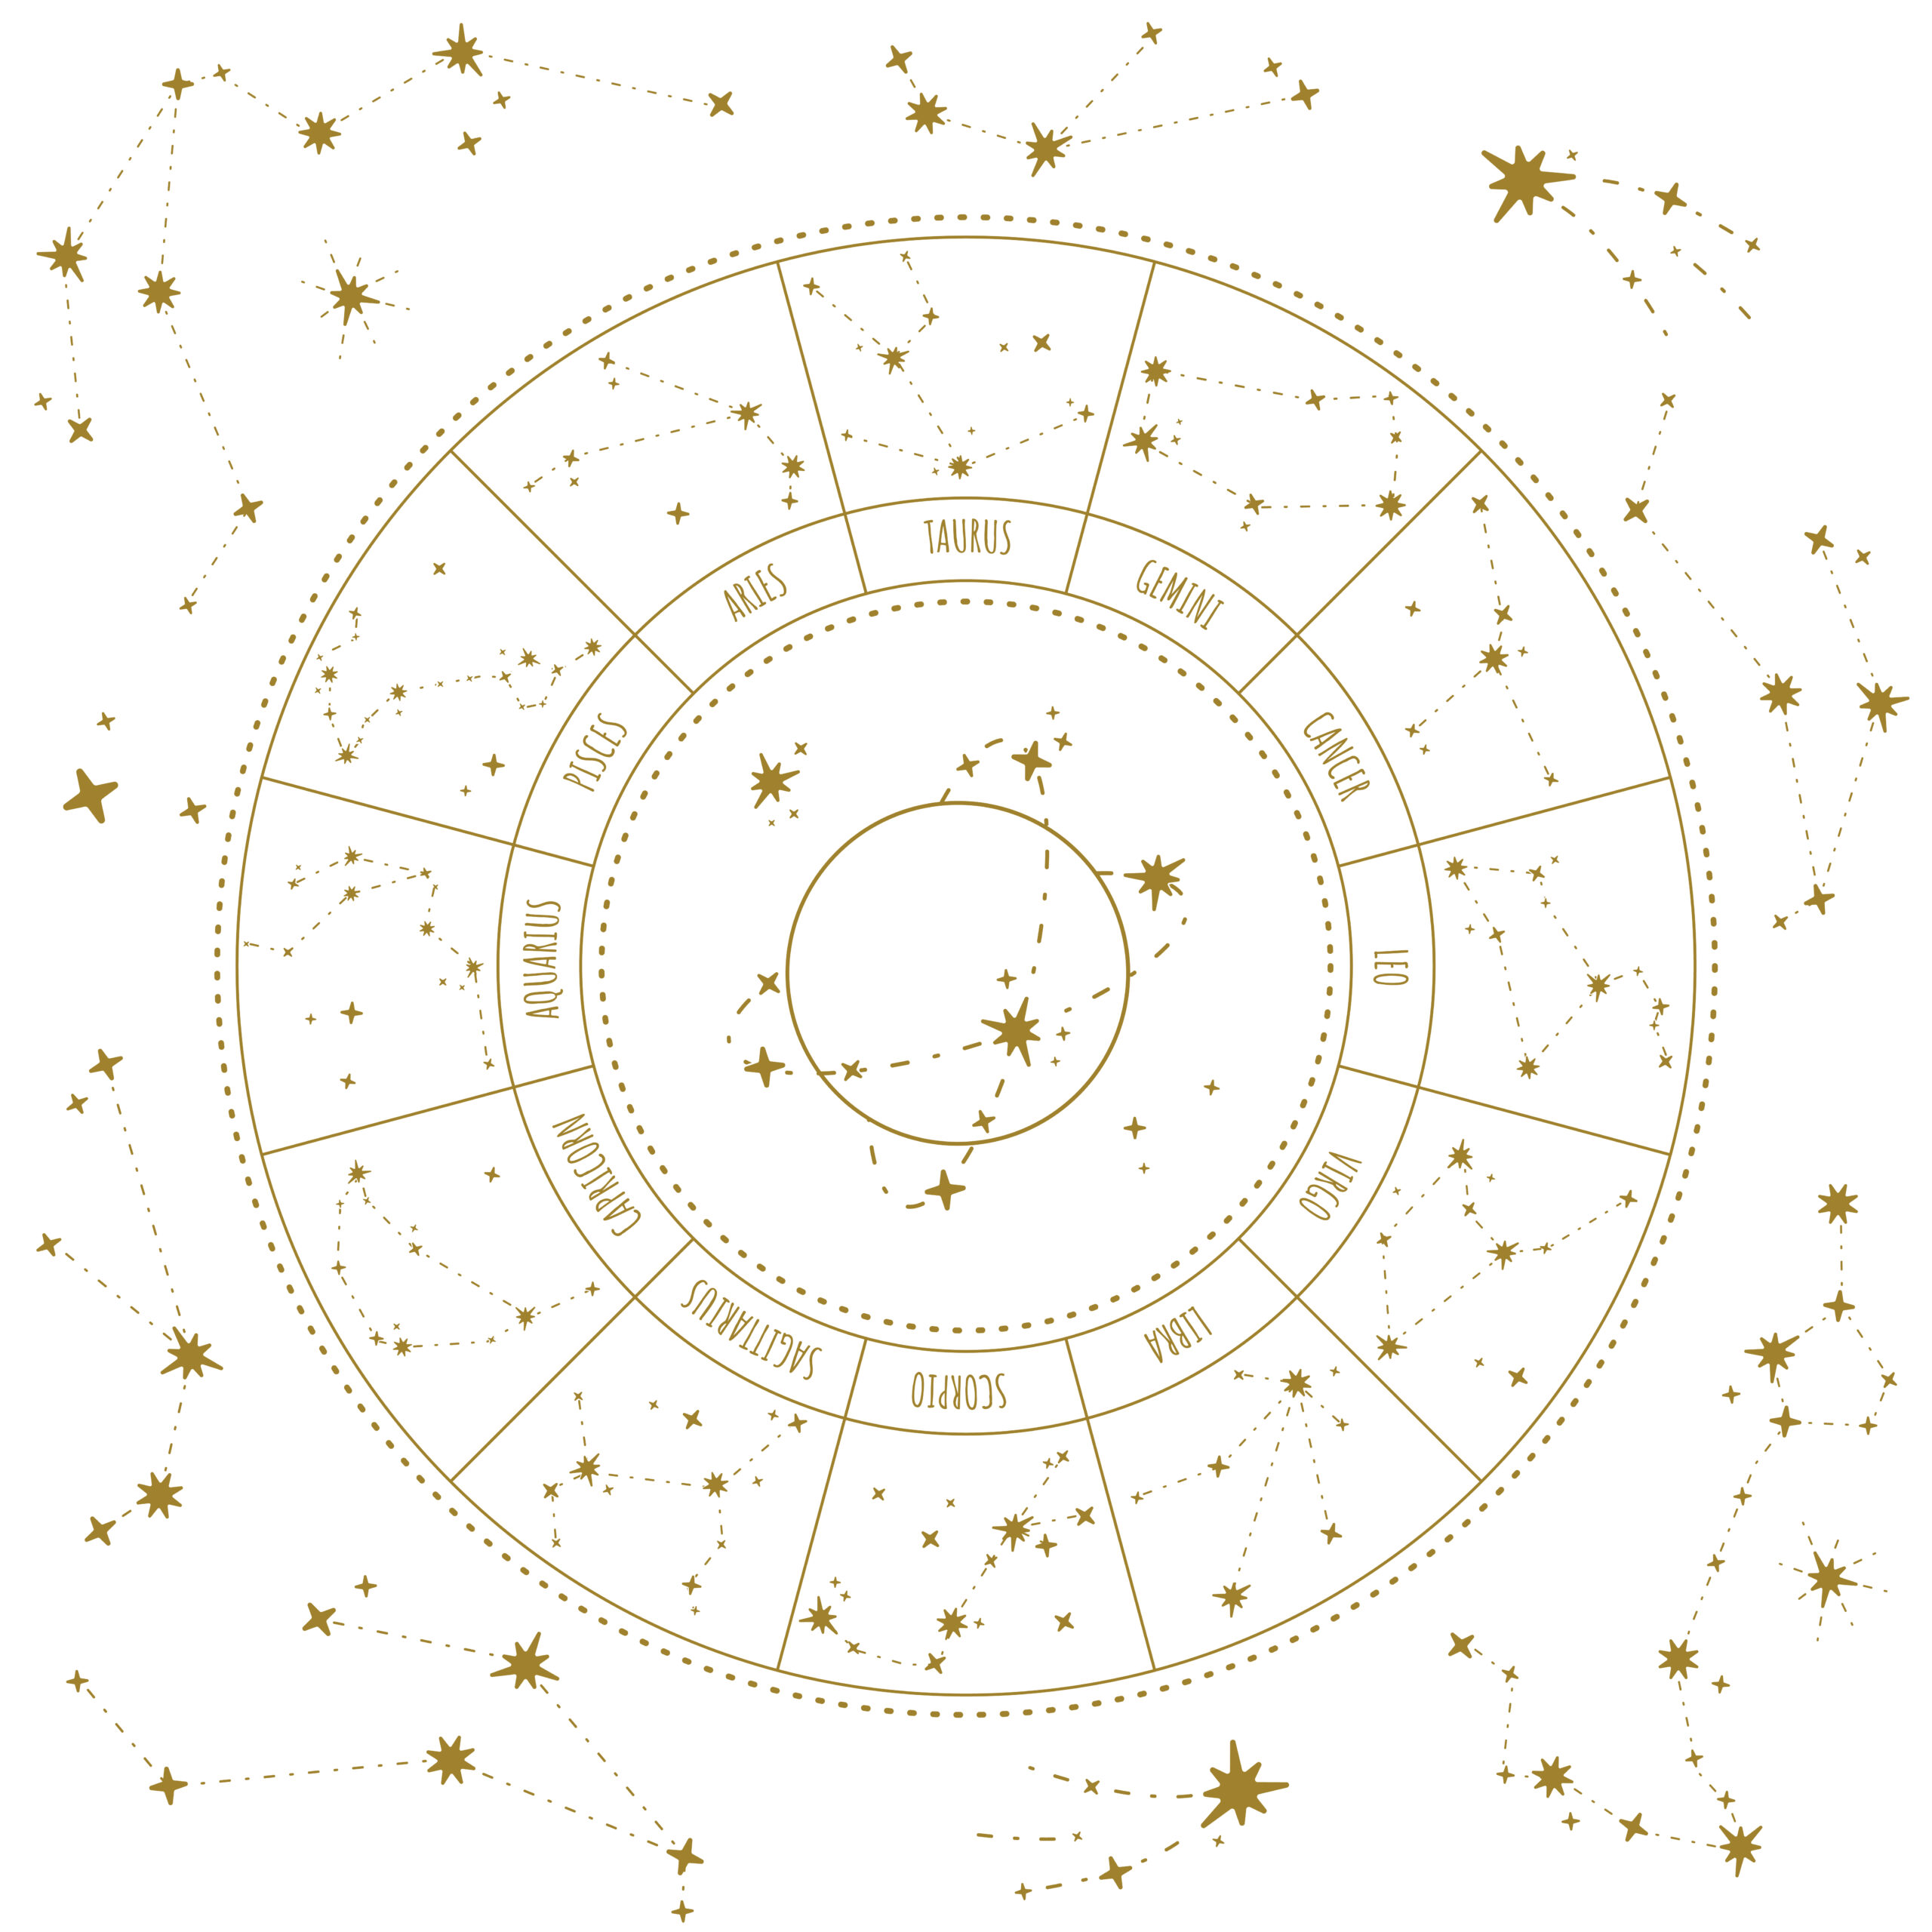 12 znakow zodiaku, magiczne miejsce, gwiazdy, zodiak, baran, byk, ryby, wodnik, bliźnięta, rak, lew, panna, waga, skorpion, strzelec, koziorożec, astrologia, uklad gwiazd